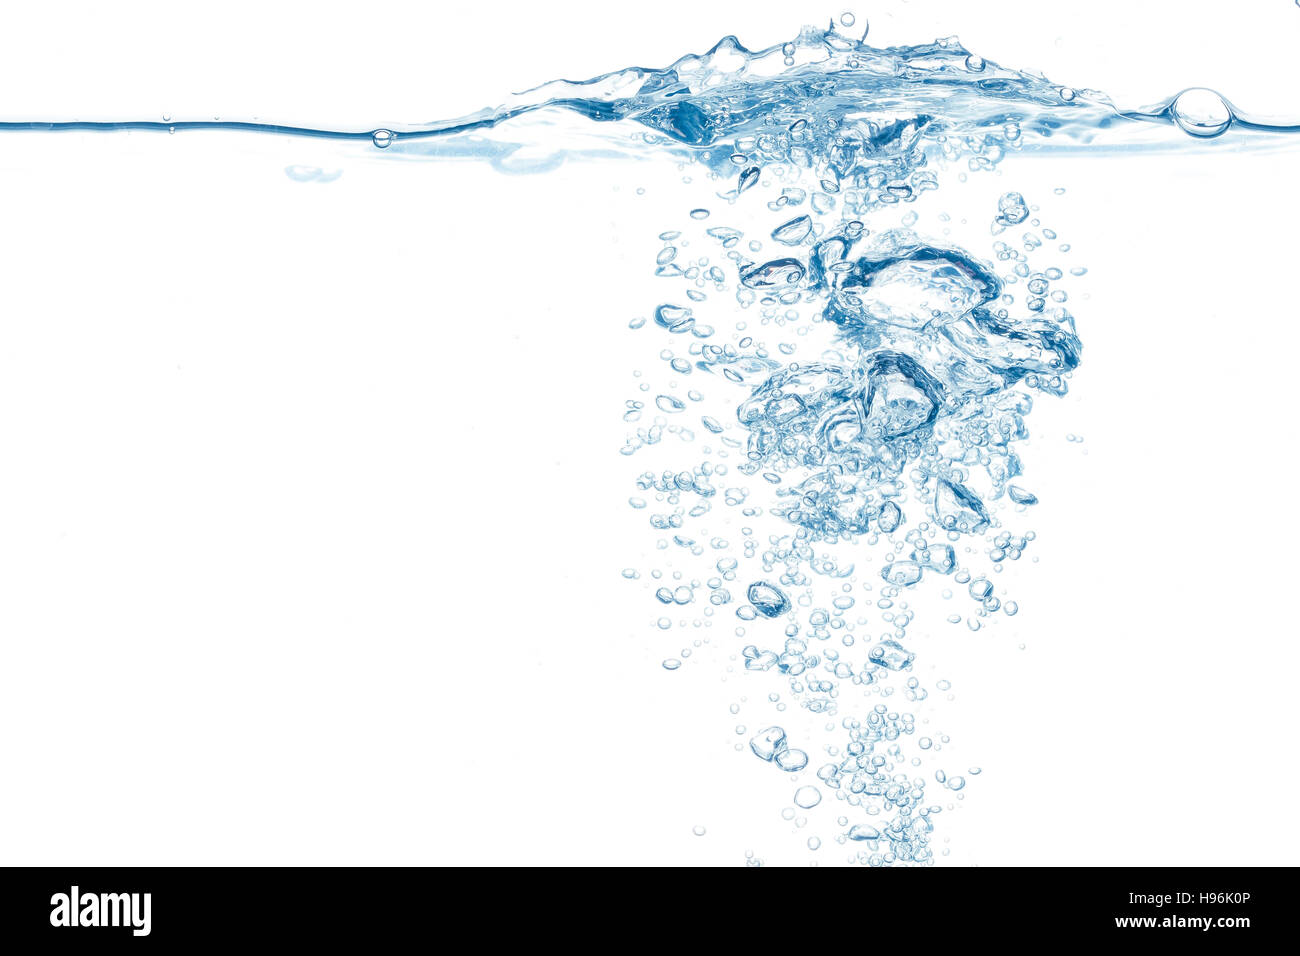 Wasseroberfläche mit Blasenstrom hervorgegangen, Textfreiraum Stockfoto